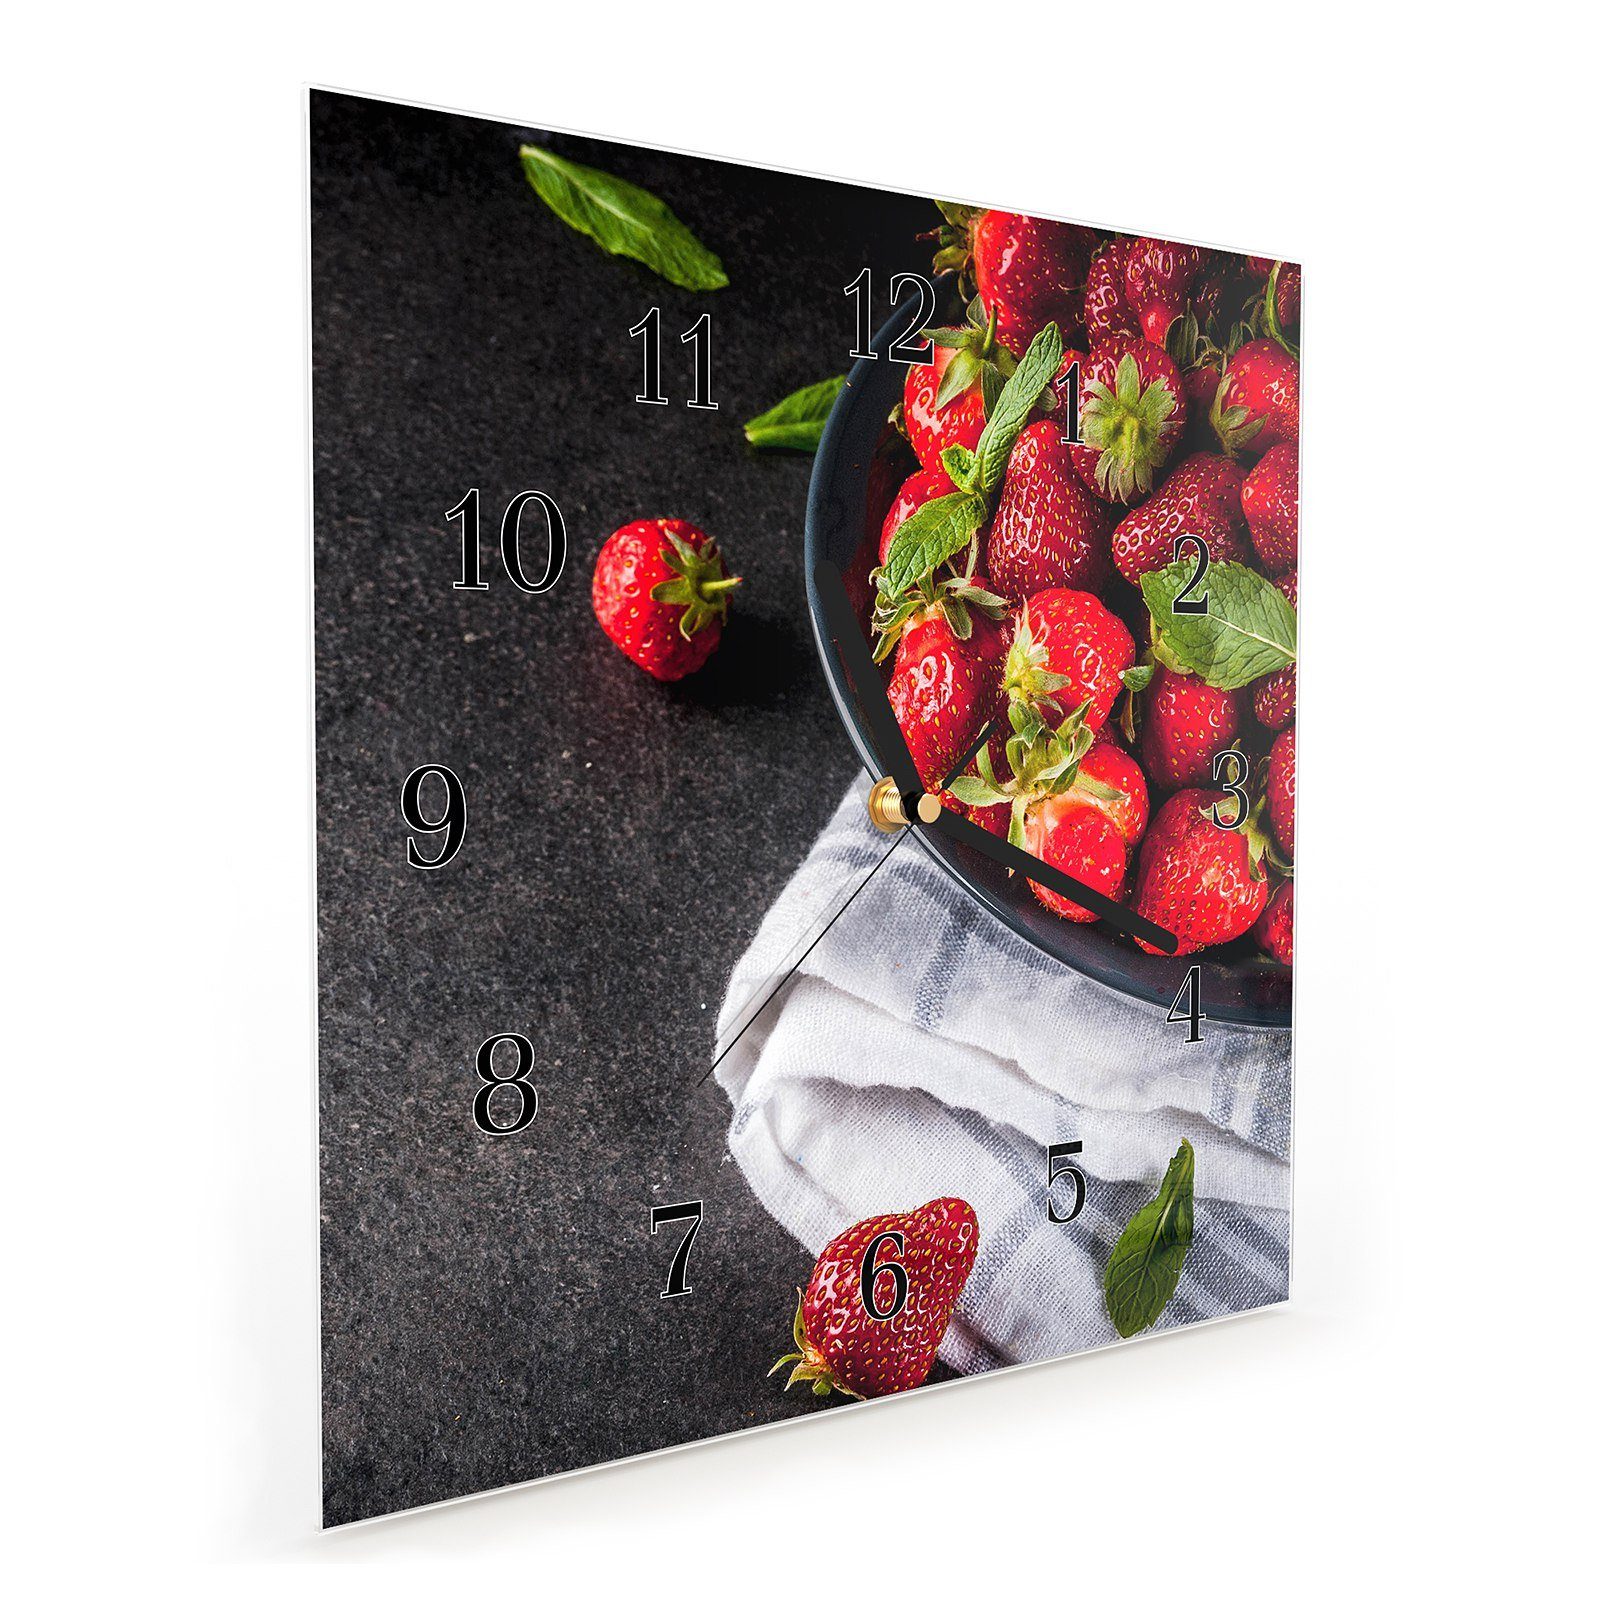 Motiv Wanduhr Primedeco Wanduhr mit Wandkunst 30 Frische Größe Glasuhr x 30 cm Erdbeeren reife